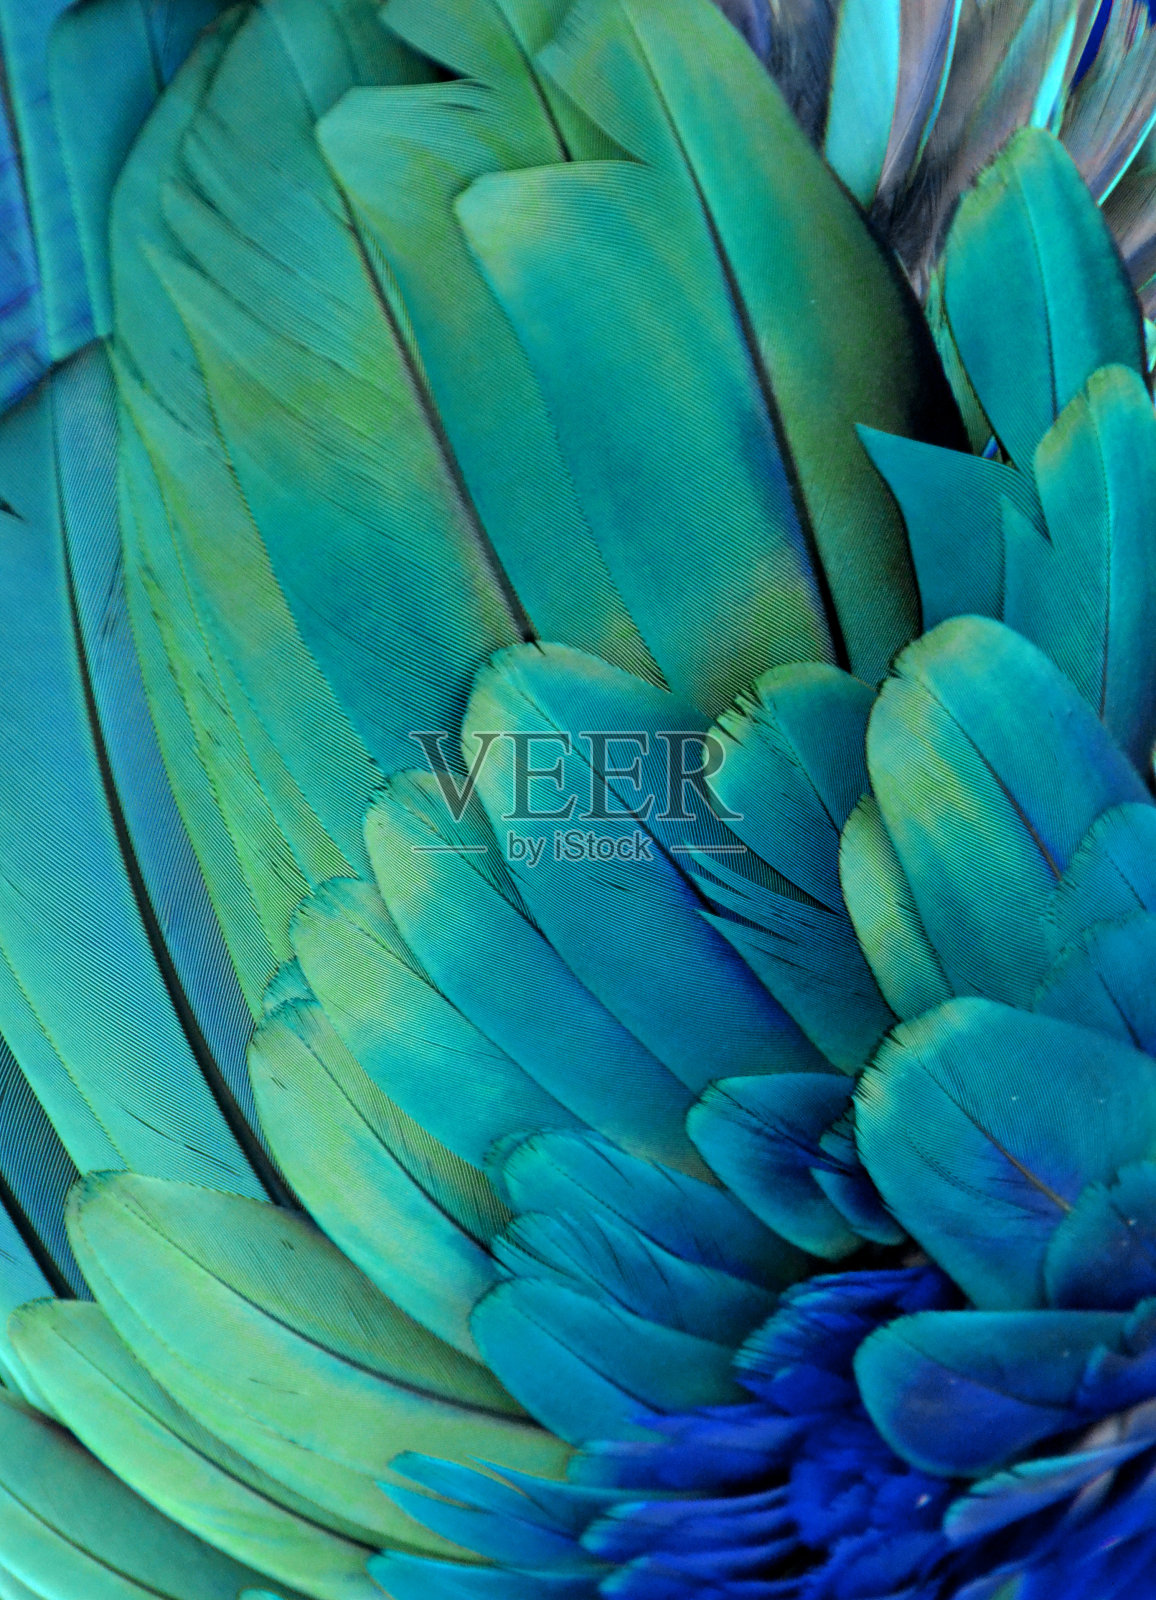 鹦鹉的羽毛(绿色/蓝色)照片摄影图片